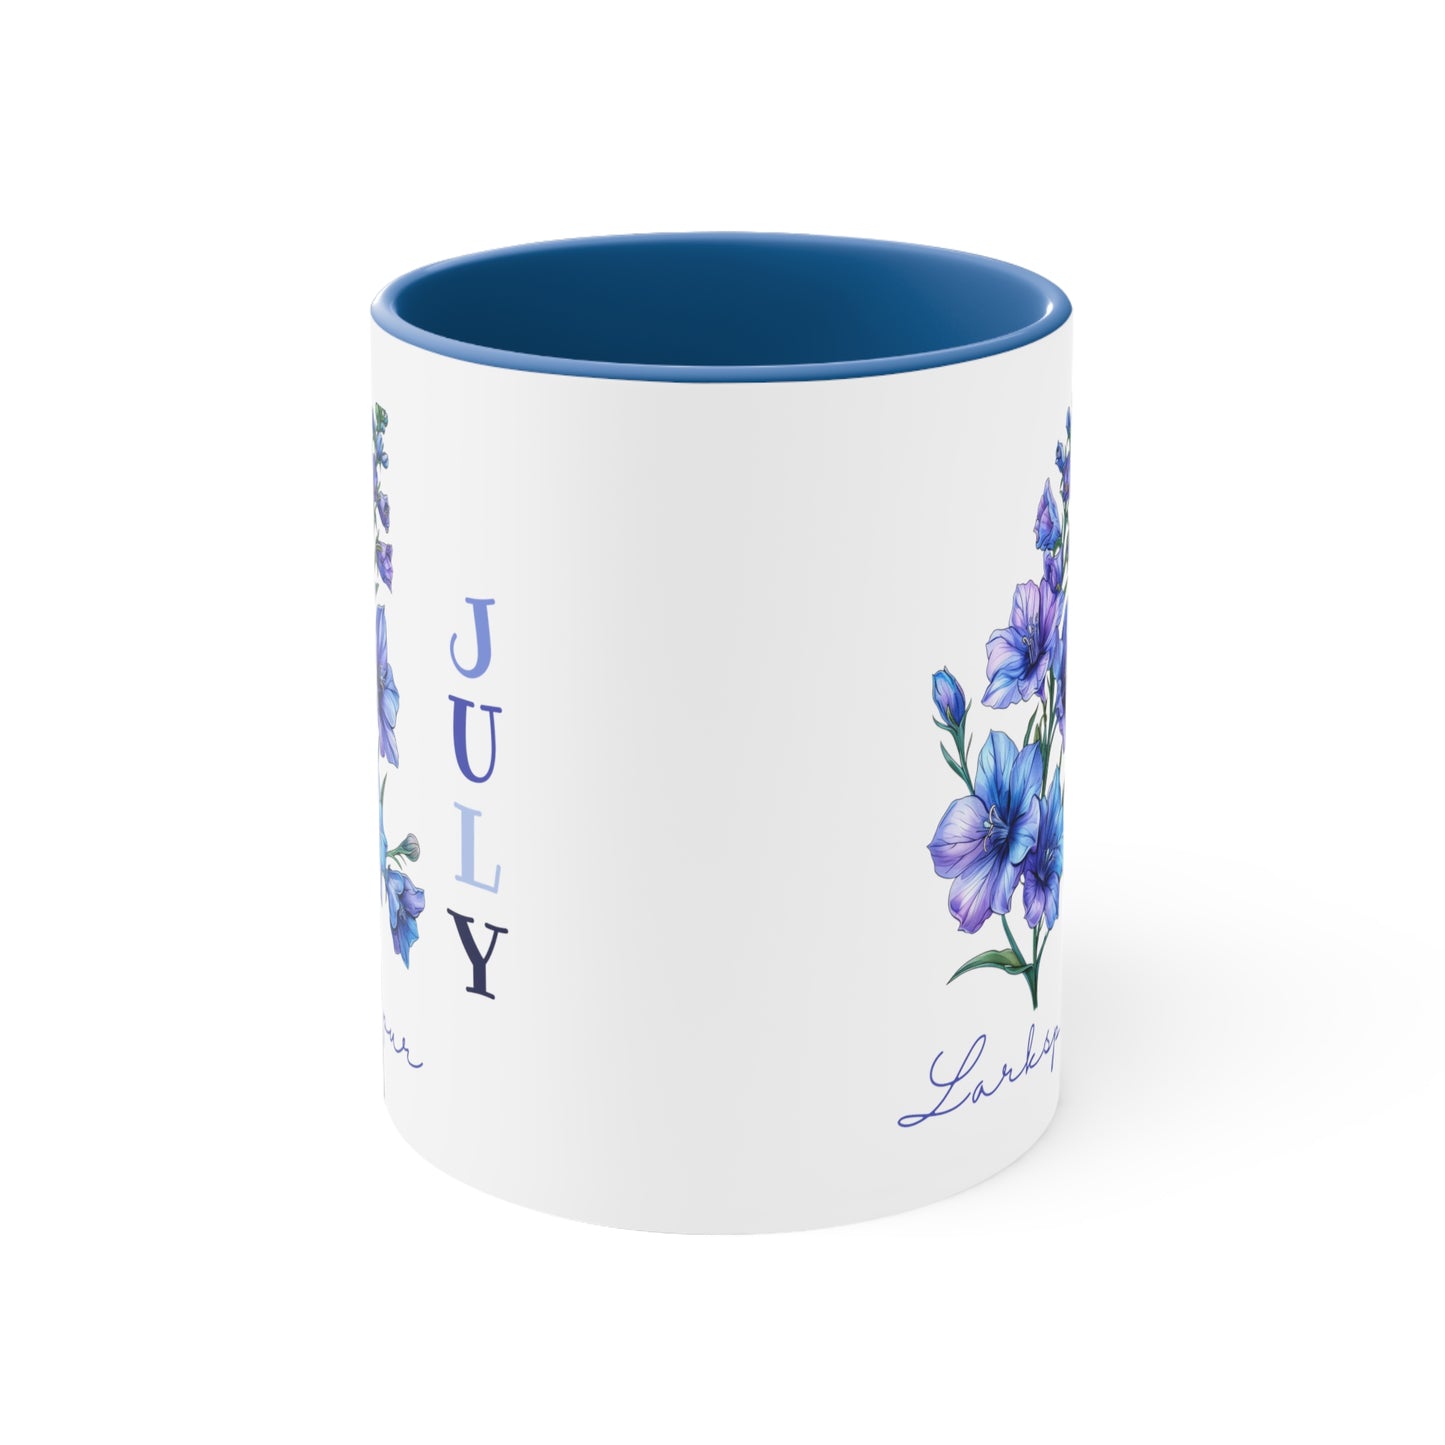 July Birth Flower Coffee Mug, 11oz, Birth Month, Born in July, Coffee Mug, Gifts For Her, Gifts For Mom, Friend Gift, Flower Mug